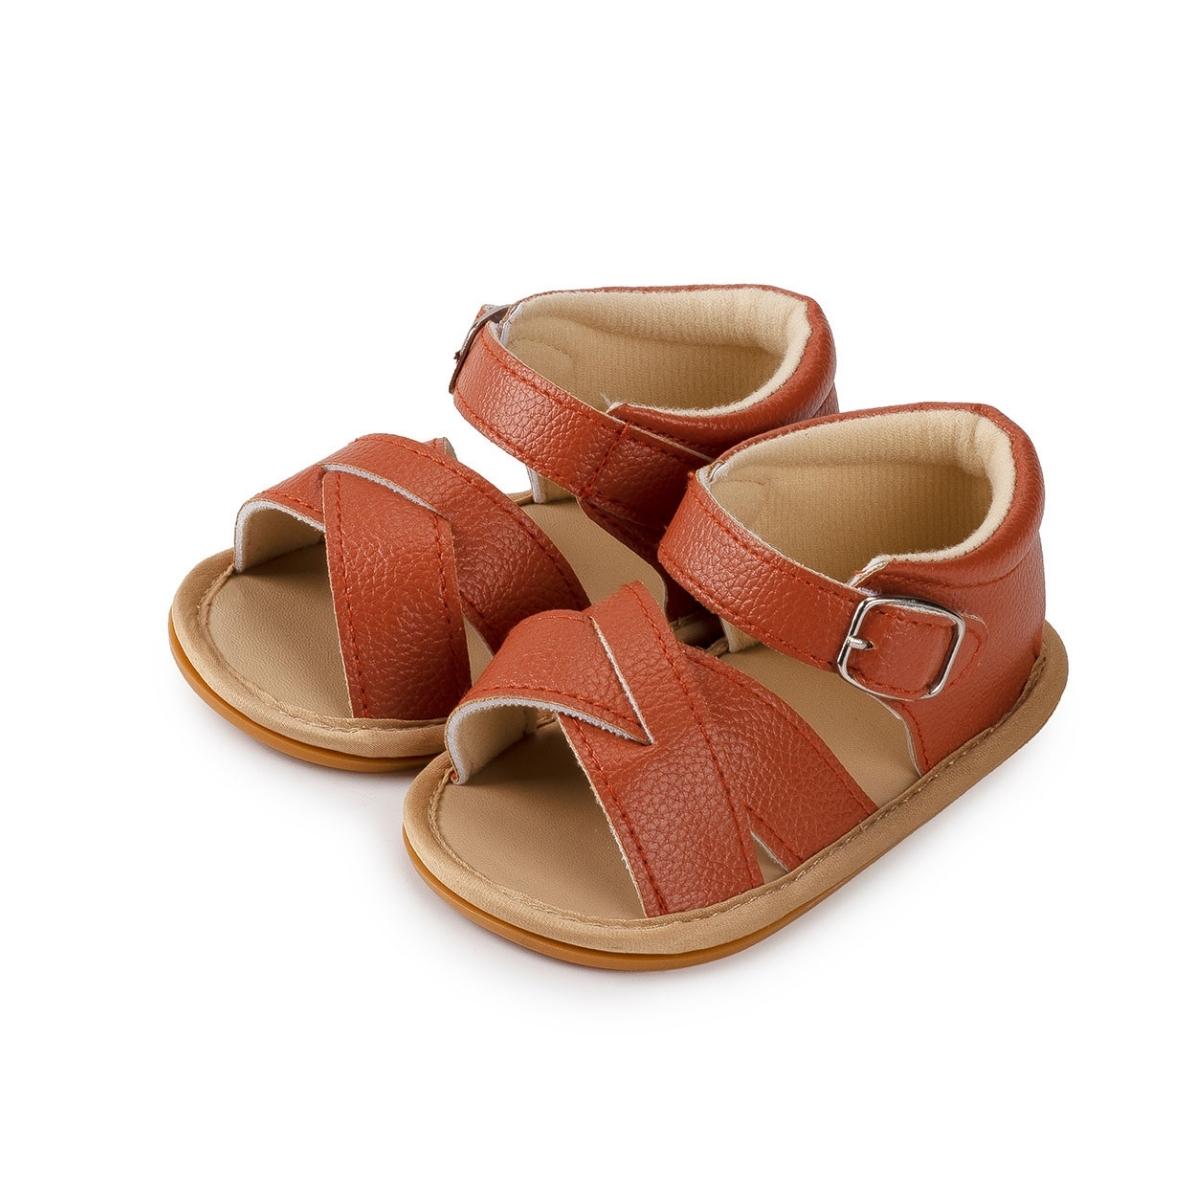 Georgia Soft Sole Sandals - Tan